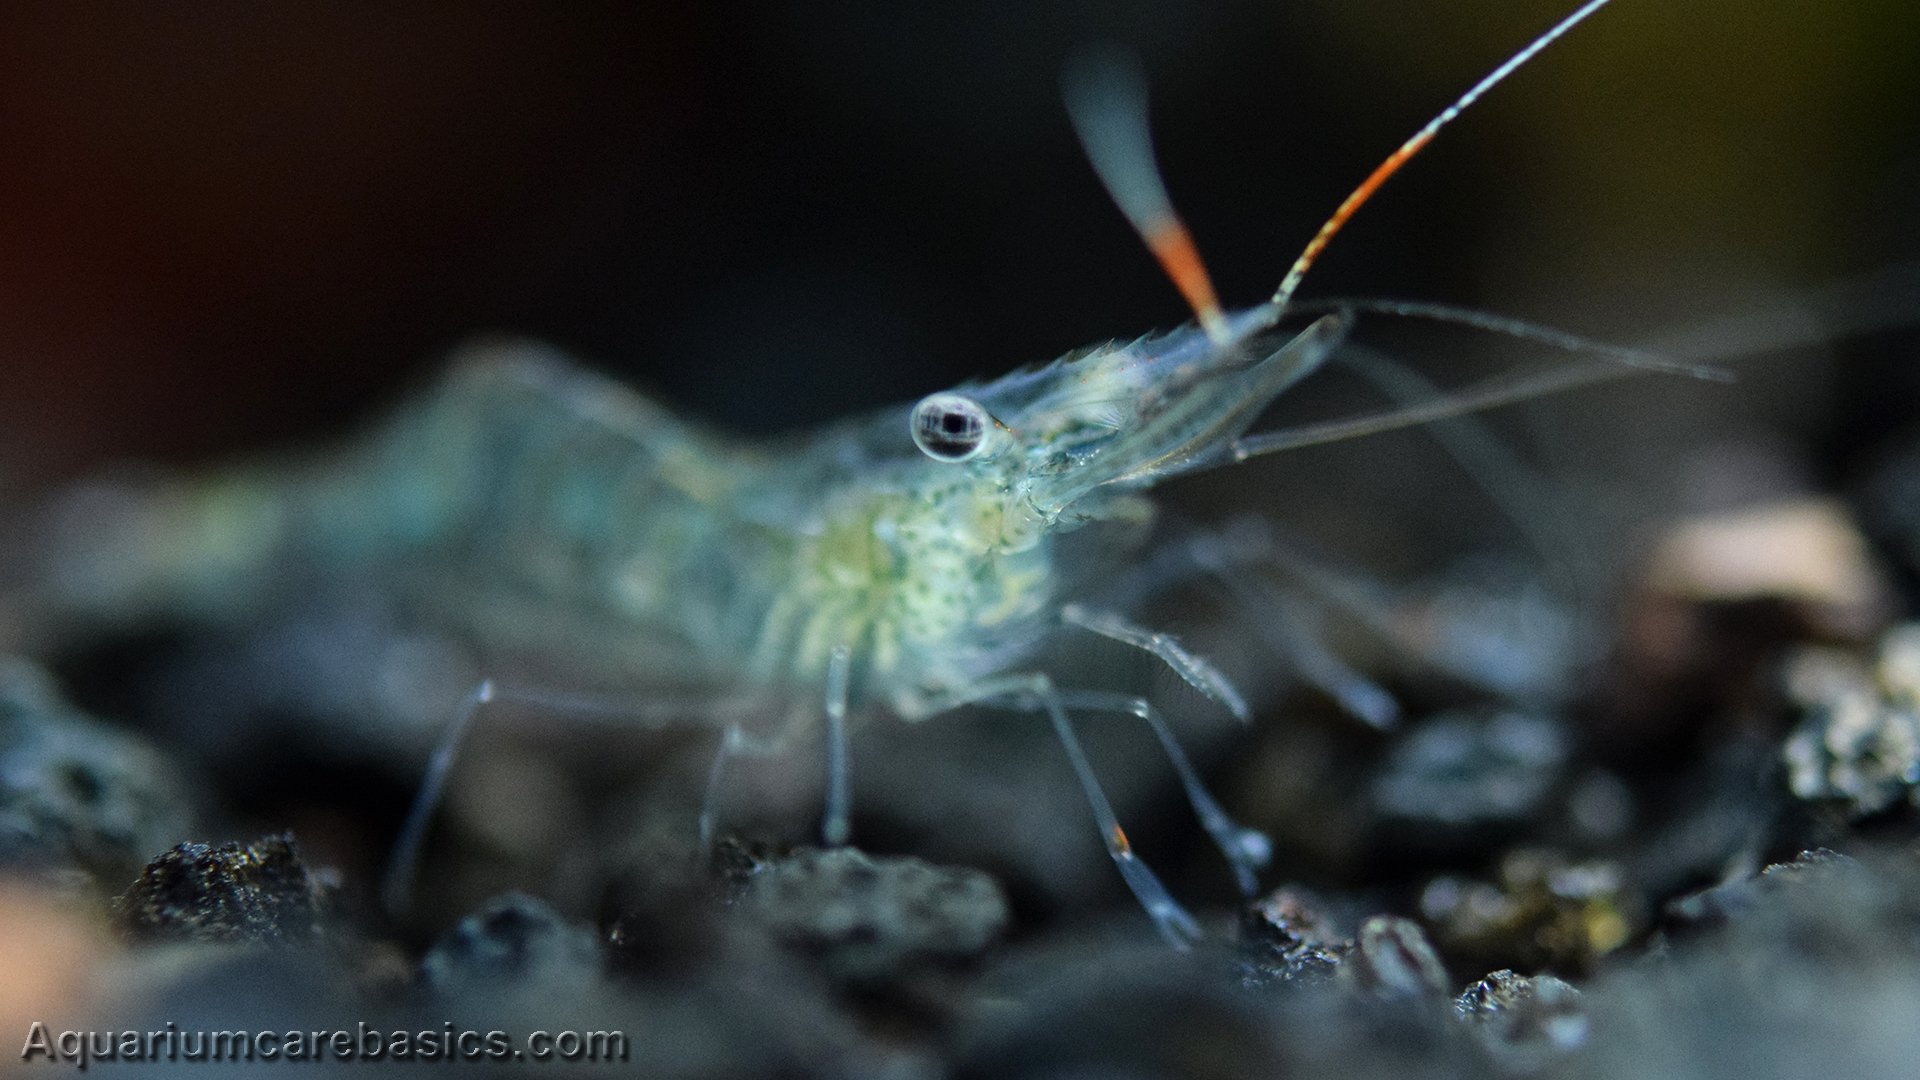 do ghost shrimp eat brown algae